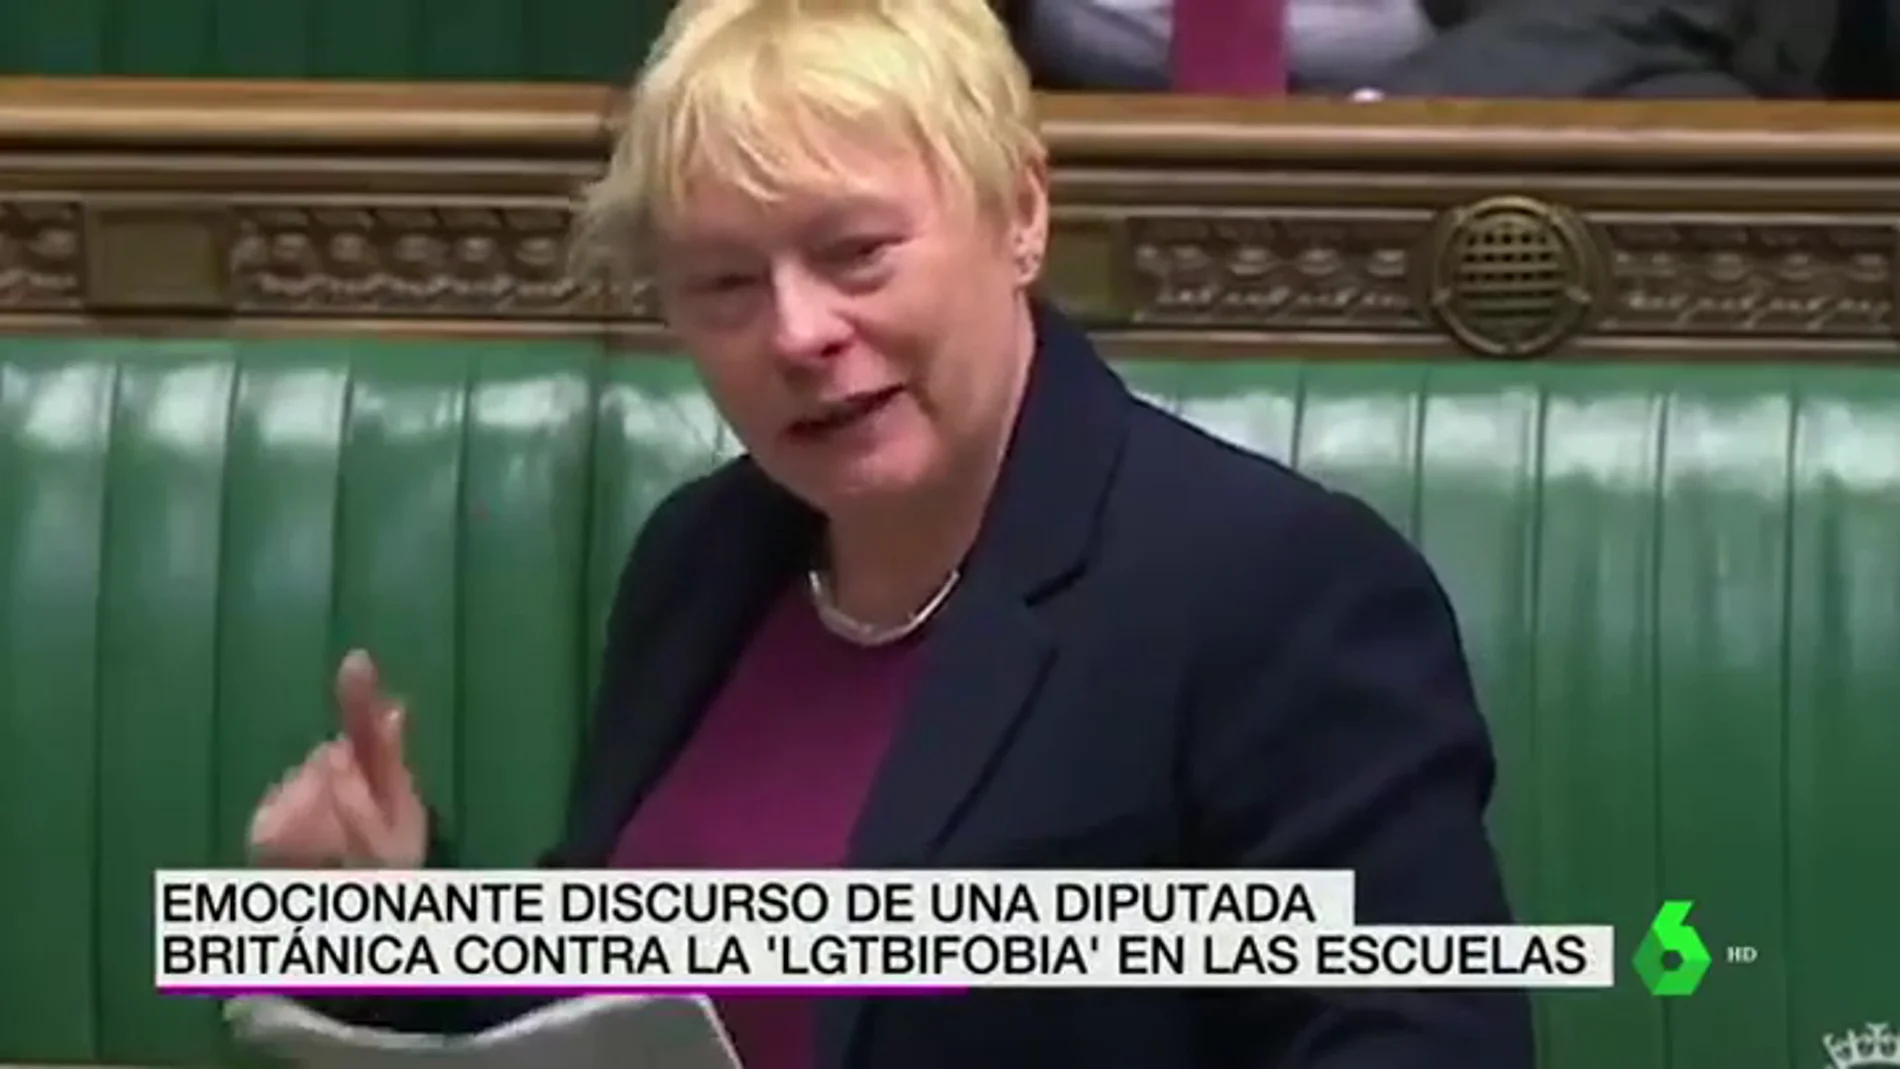 El emocionante discurso de una diputada británica contra la LGTBIfobia en las escuelas: "No vamos a volver al armario"